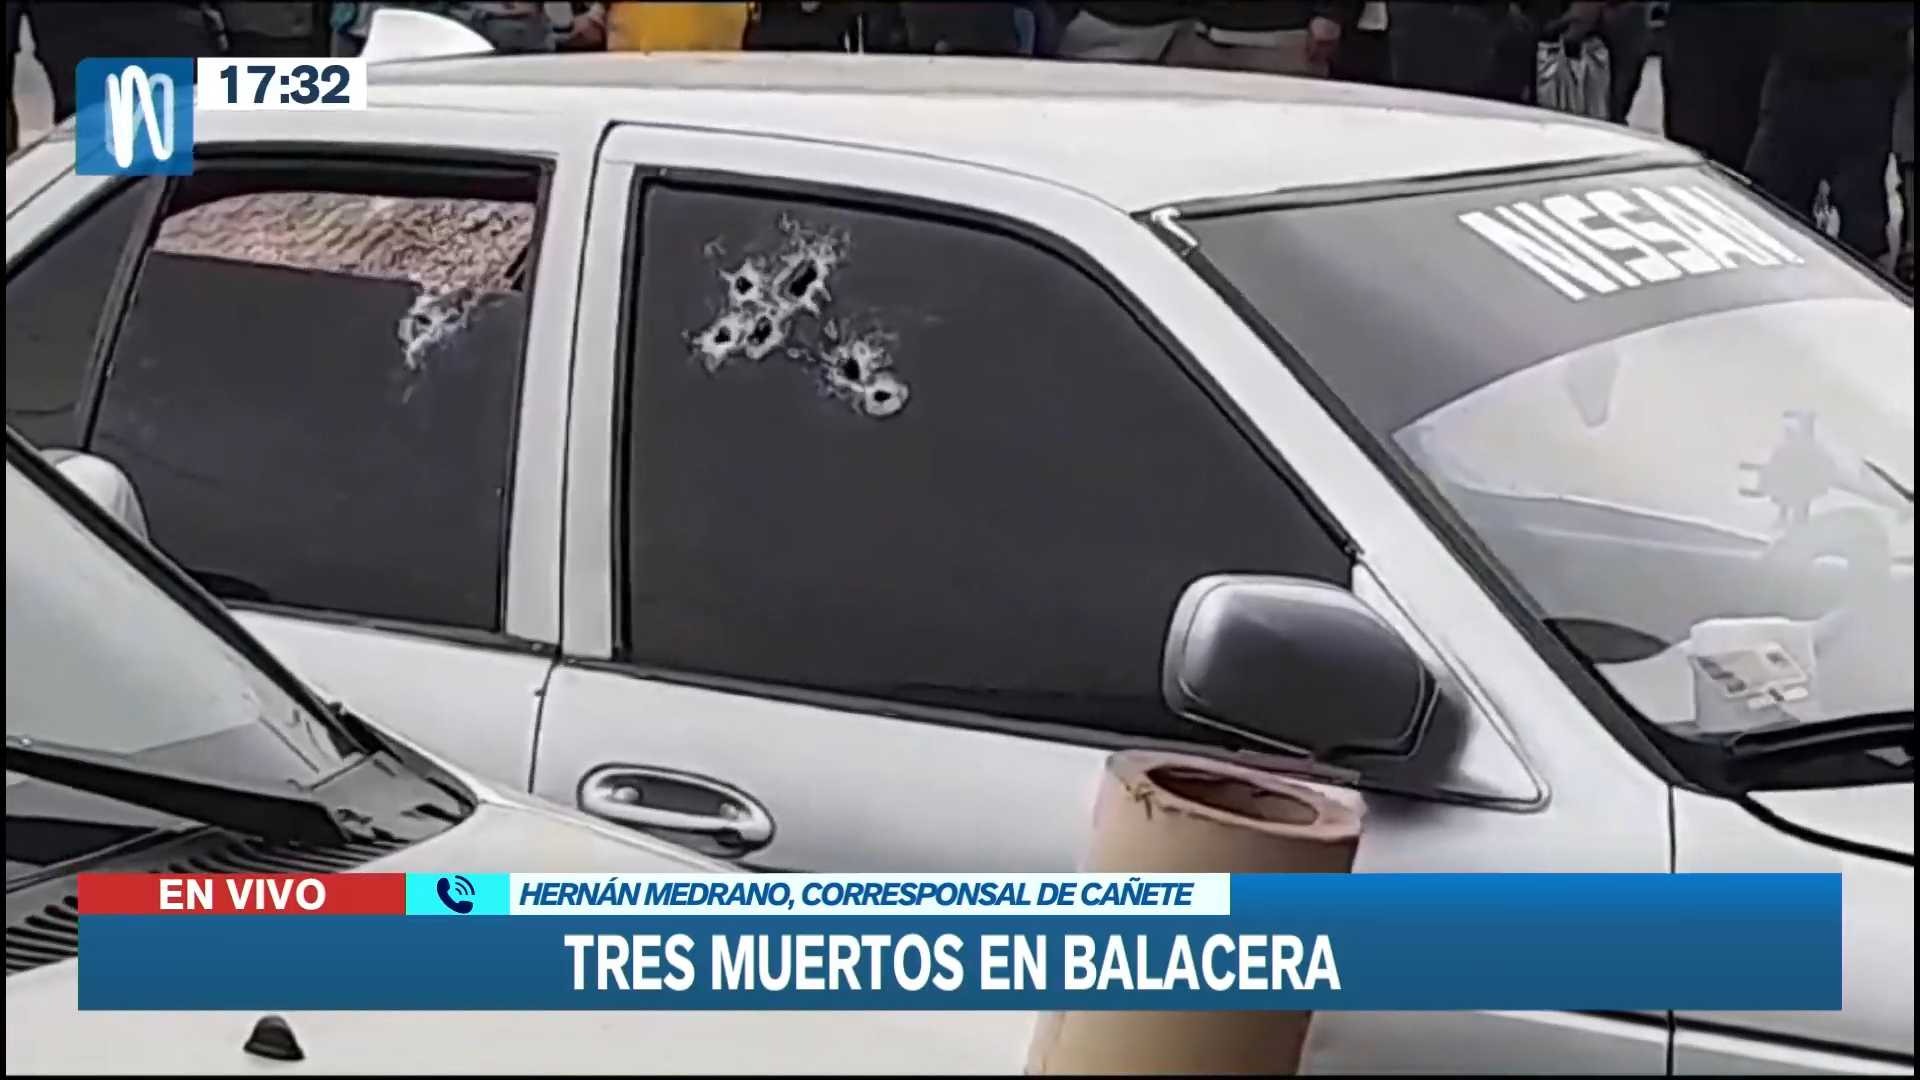 Cañete: Balacera dejó tres muertos en la vía pública